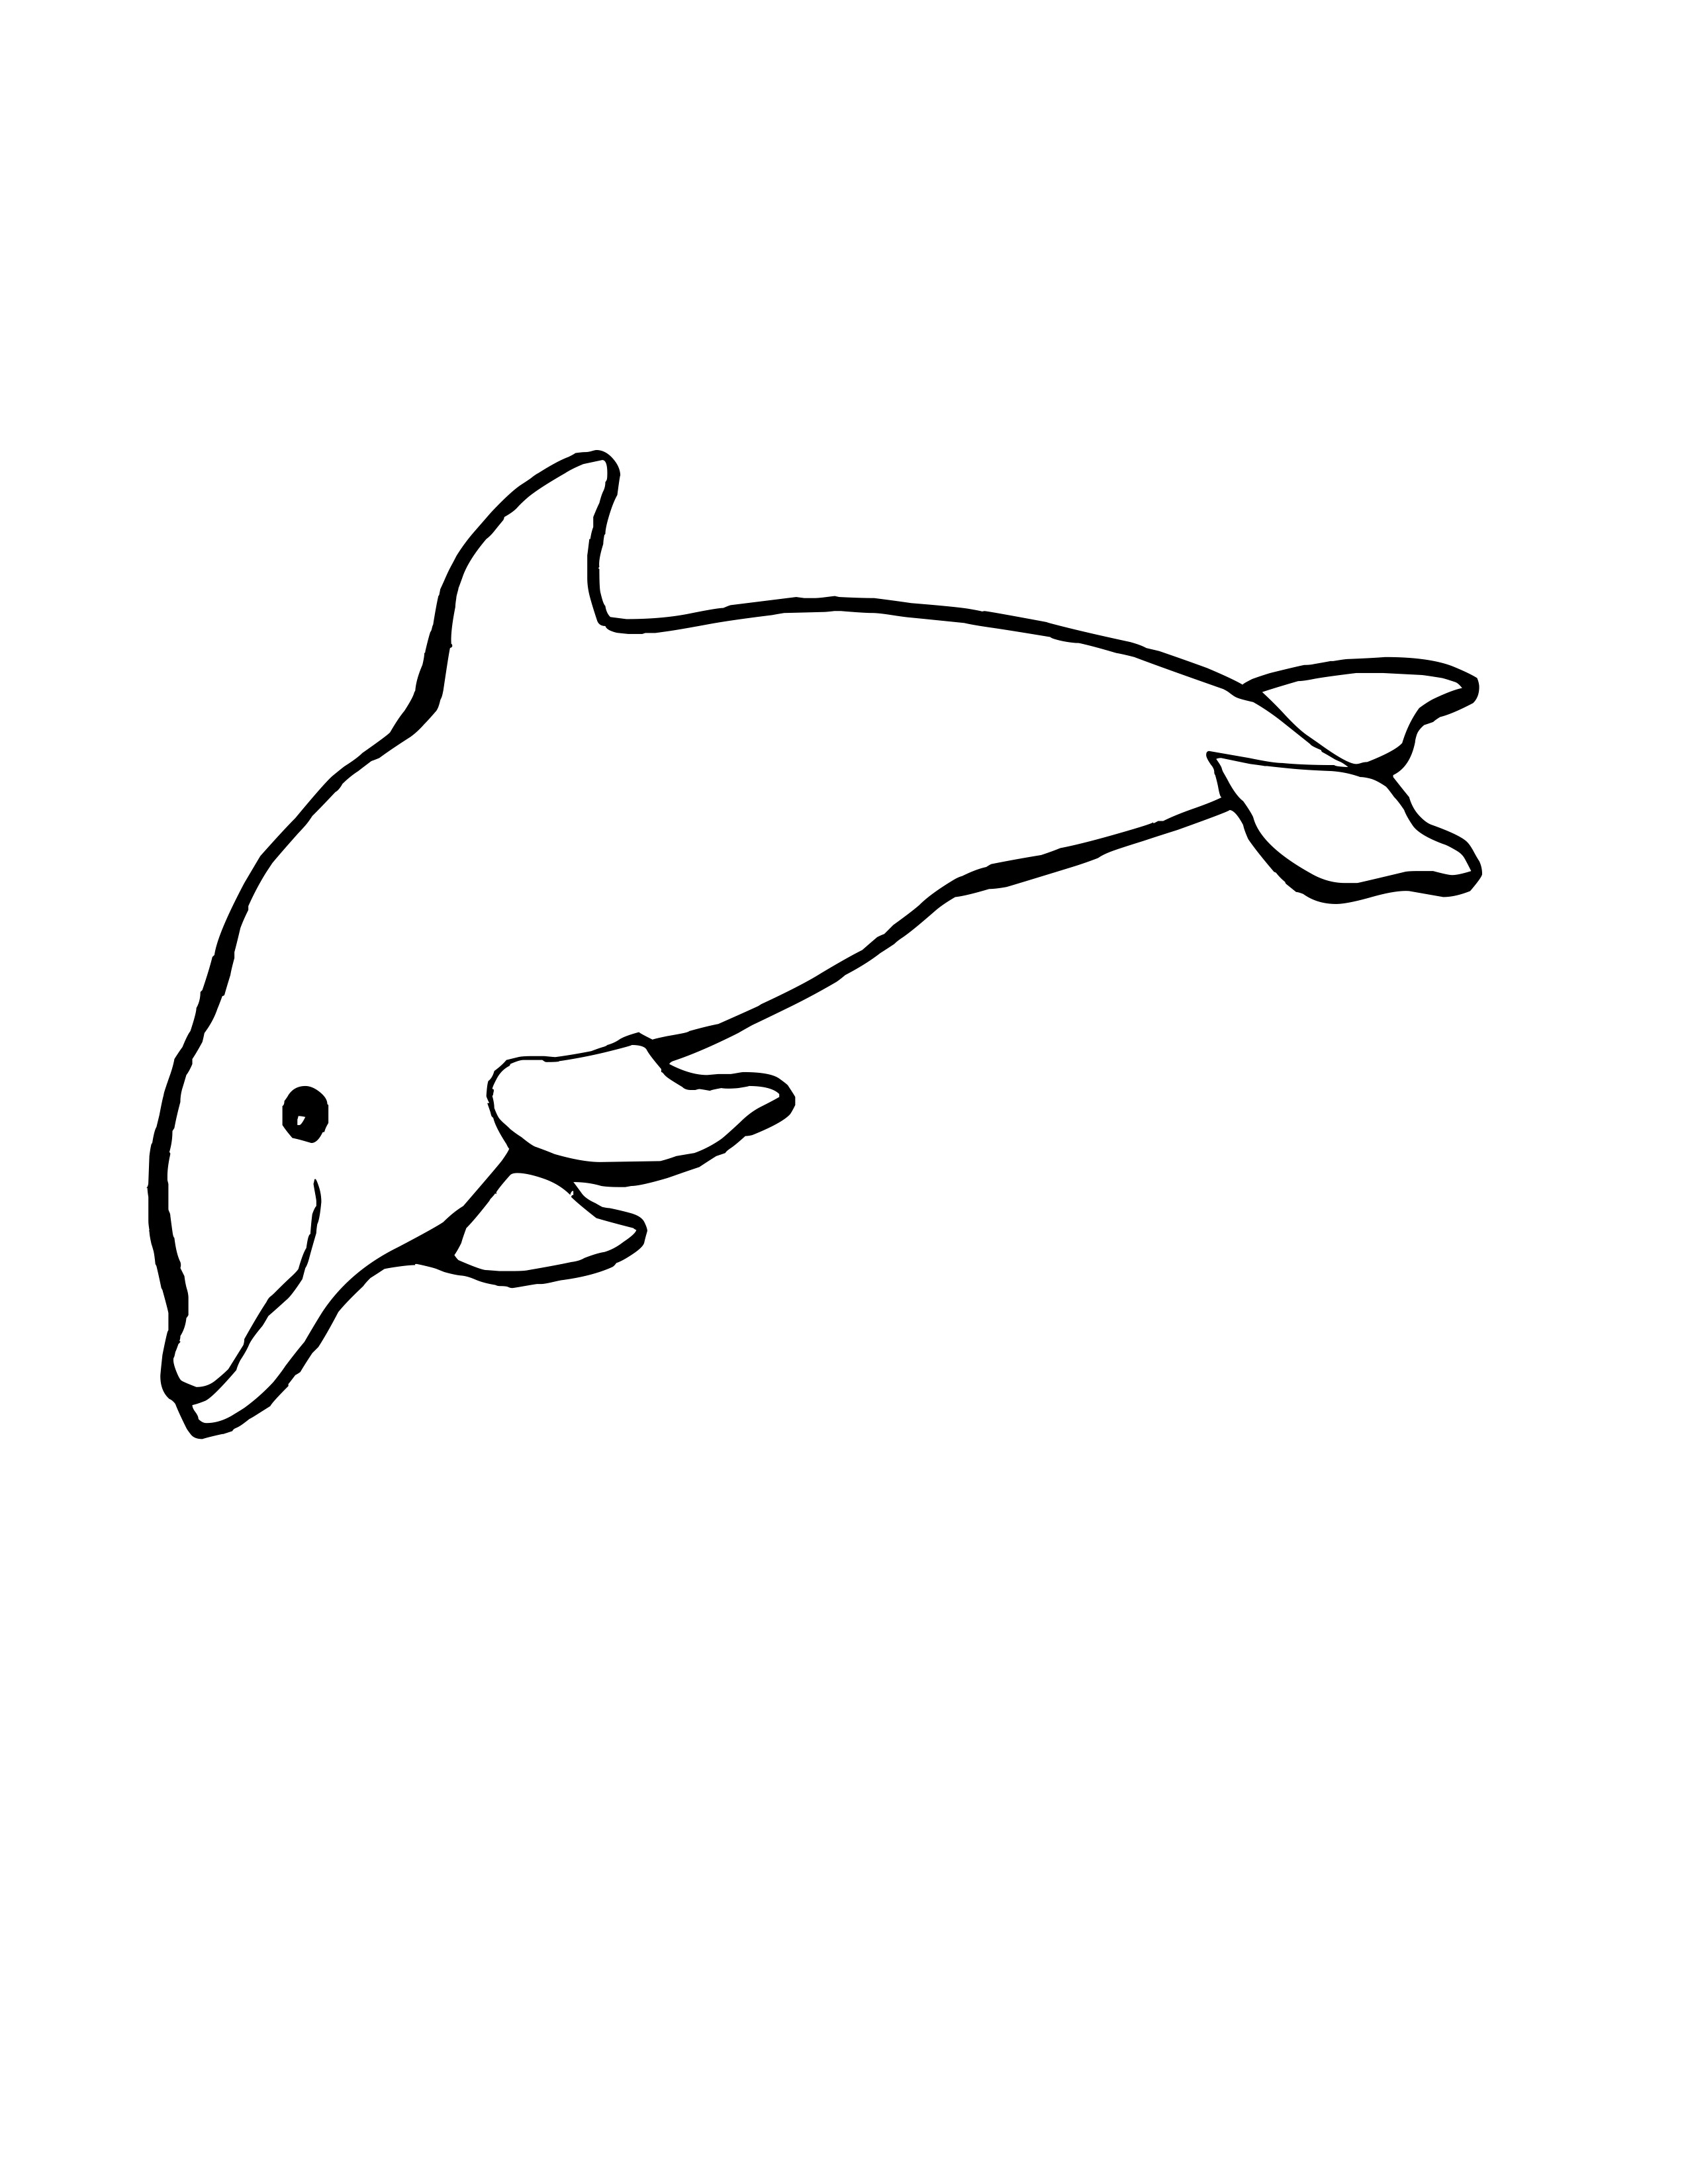 Dessin de dauphin pour imprimer et colorier